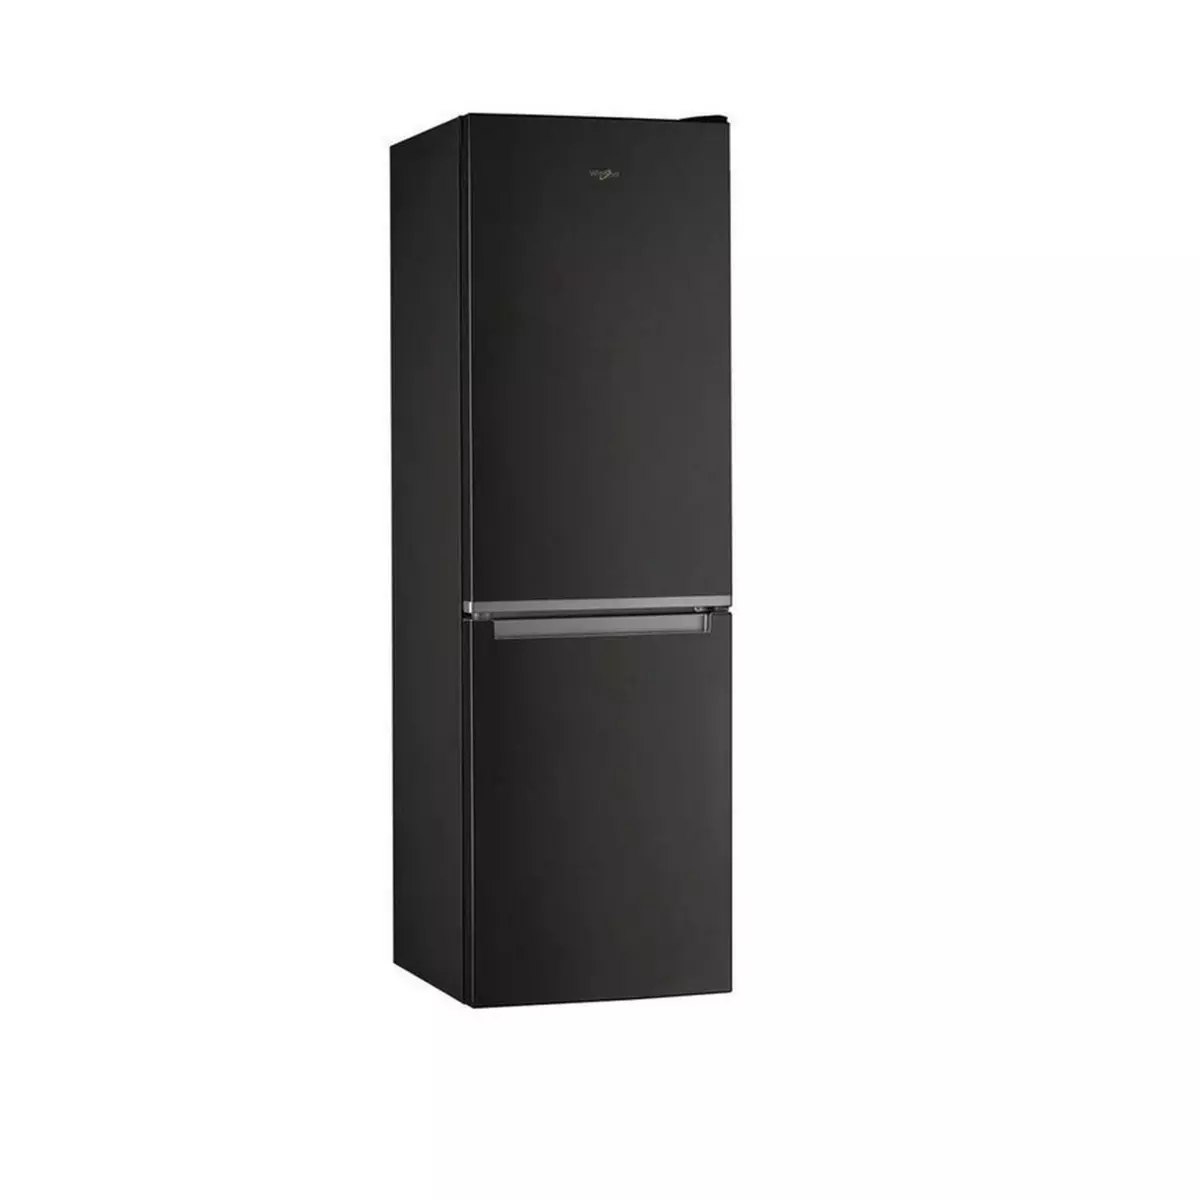 WHIRLPOOL Réfrigérateur combiné W7 811I K, 343 L, Froid ventilé No frost